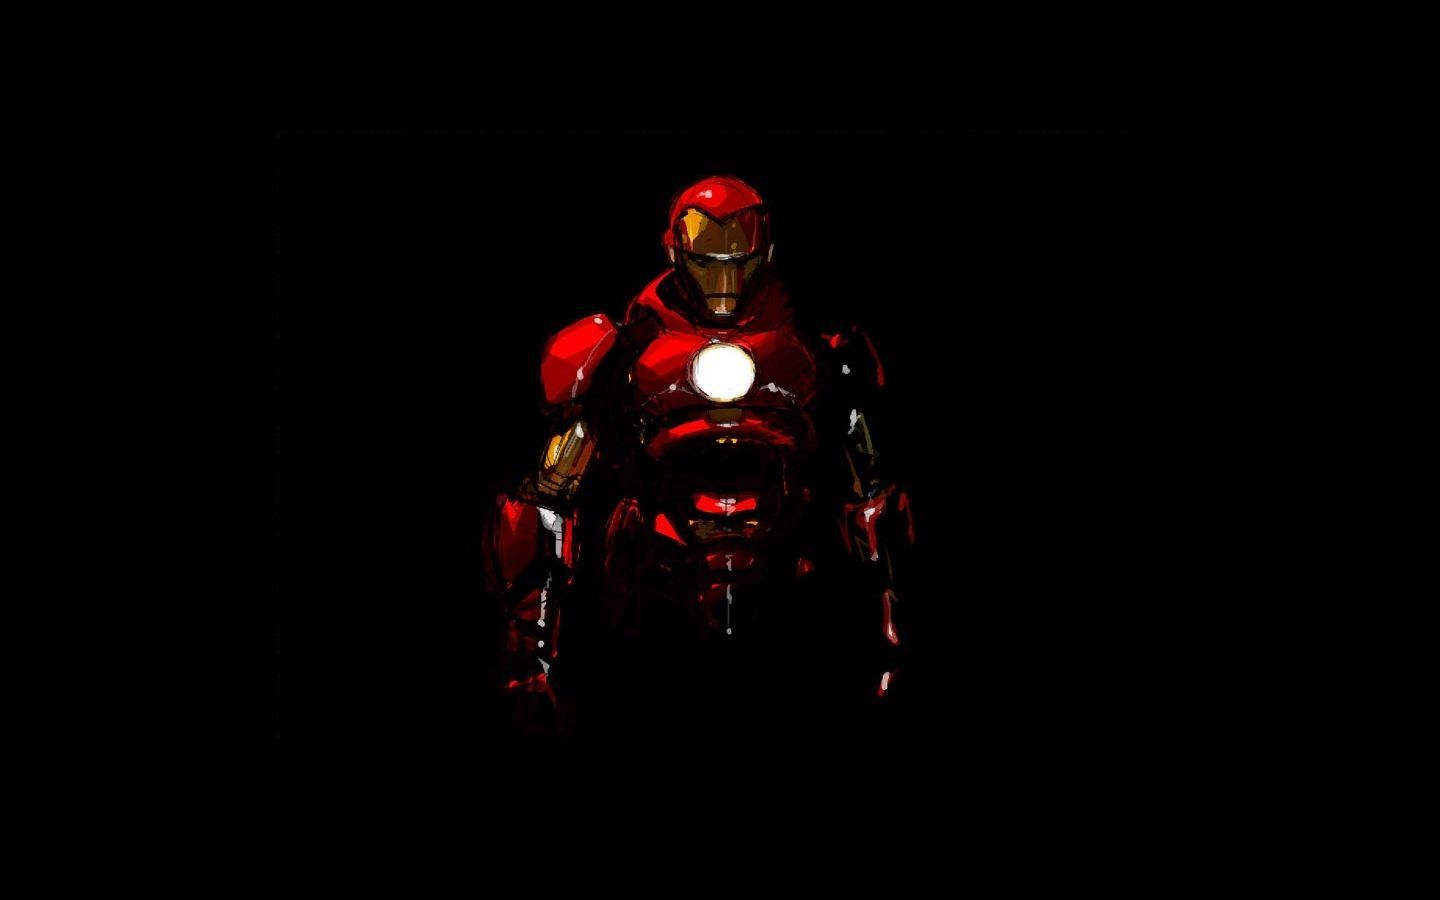 Iron Man Wallpaper | 1440x900 | ID:28943